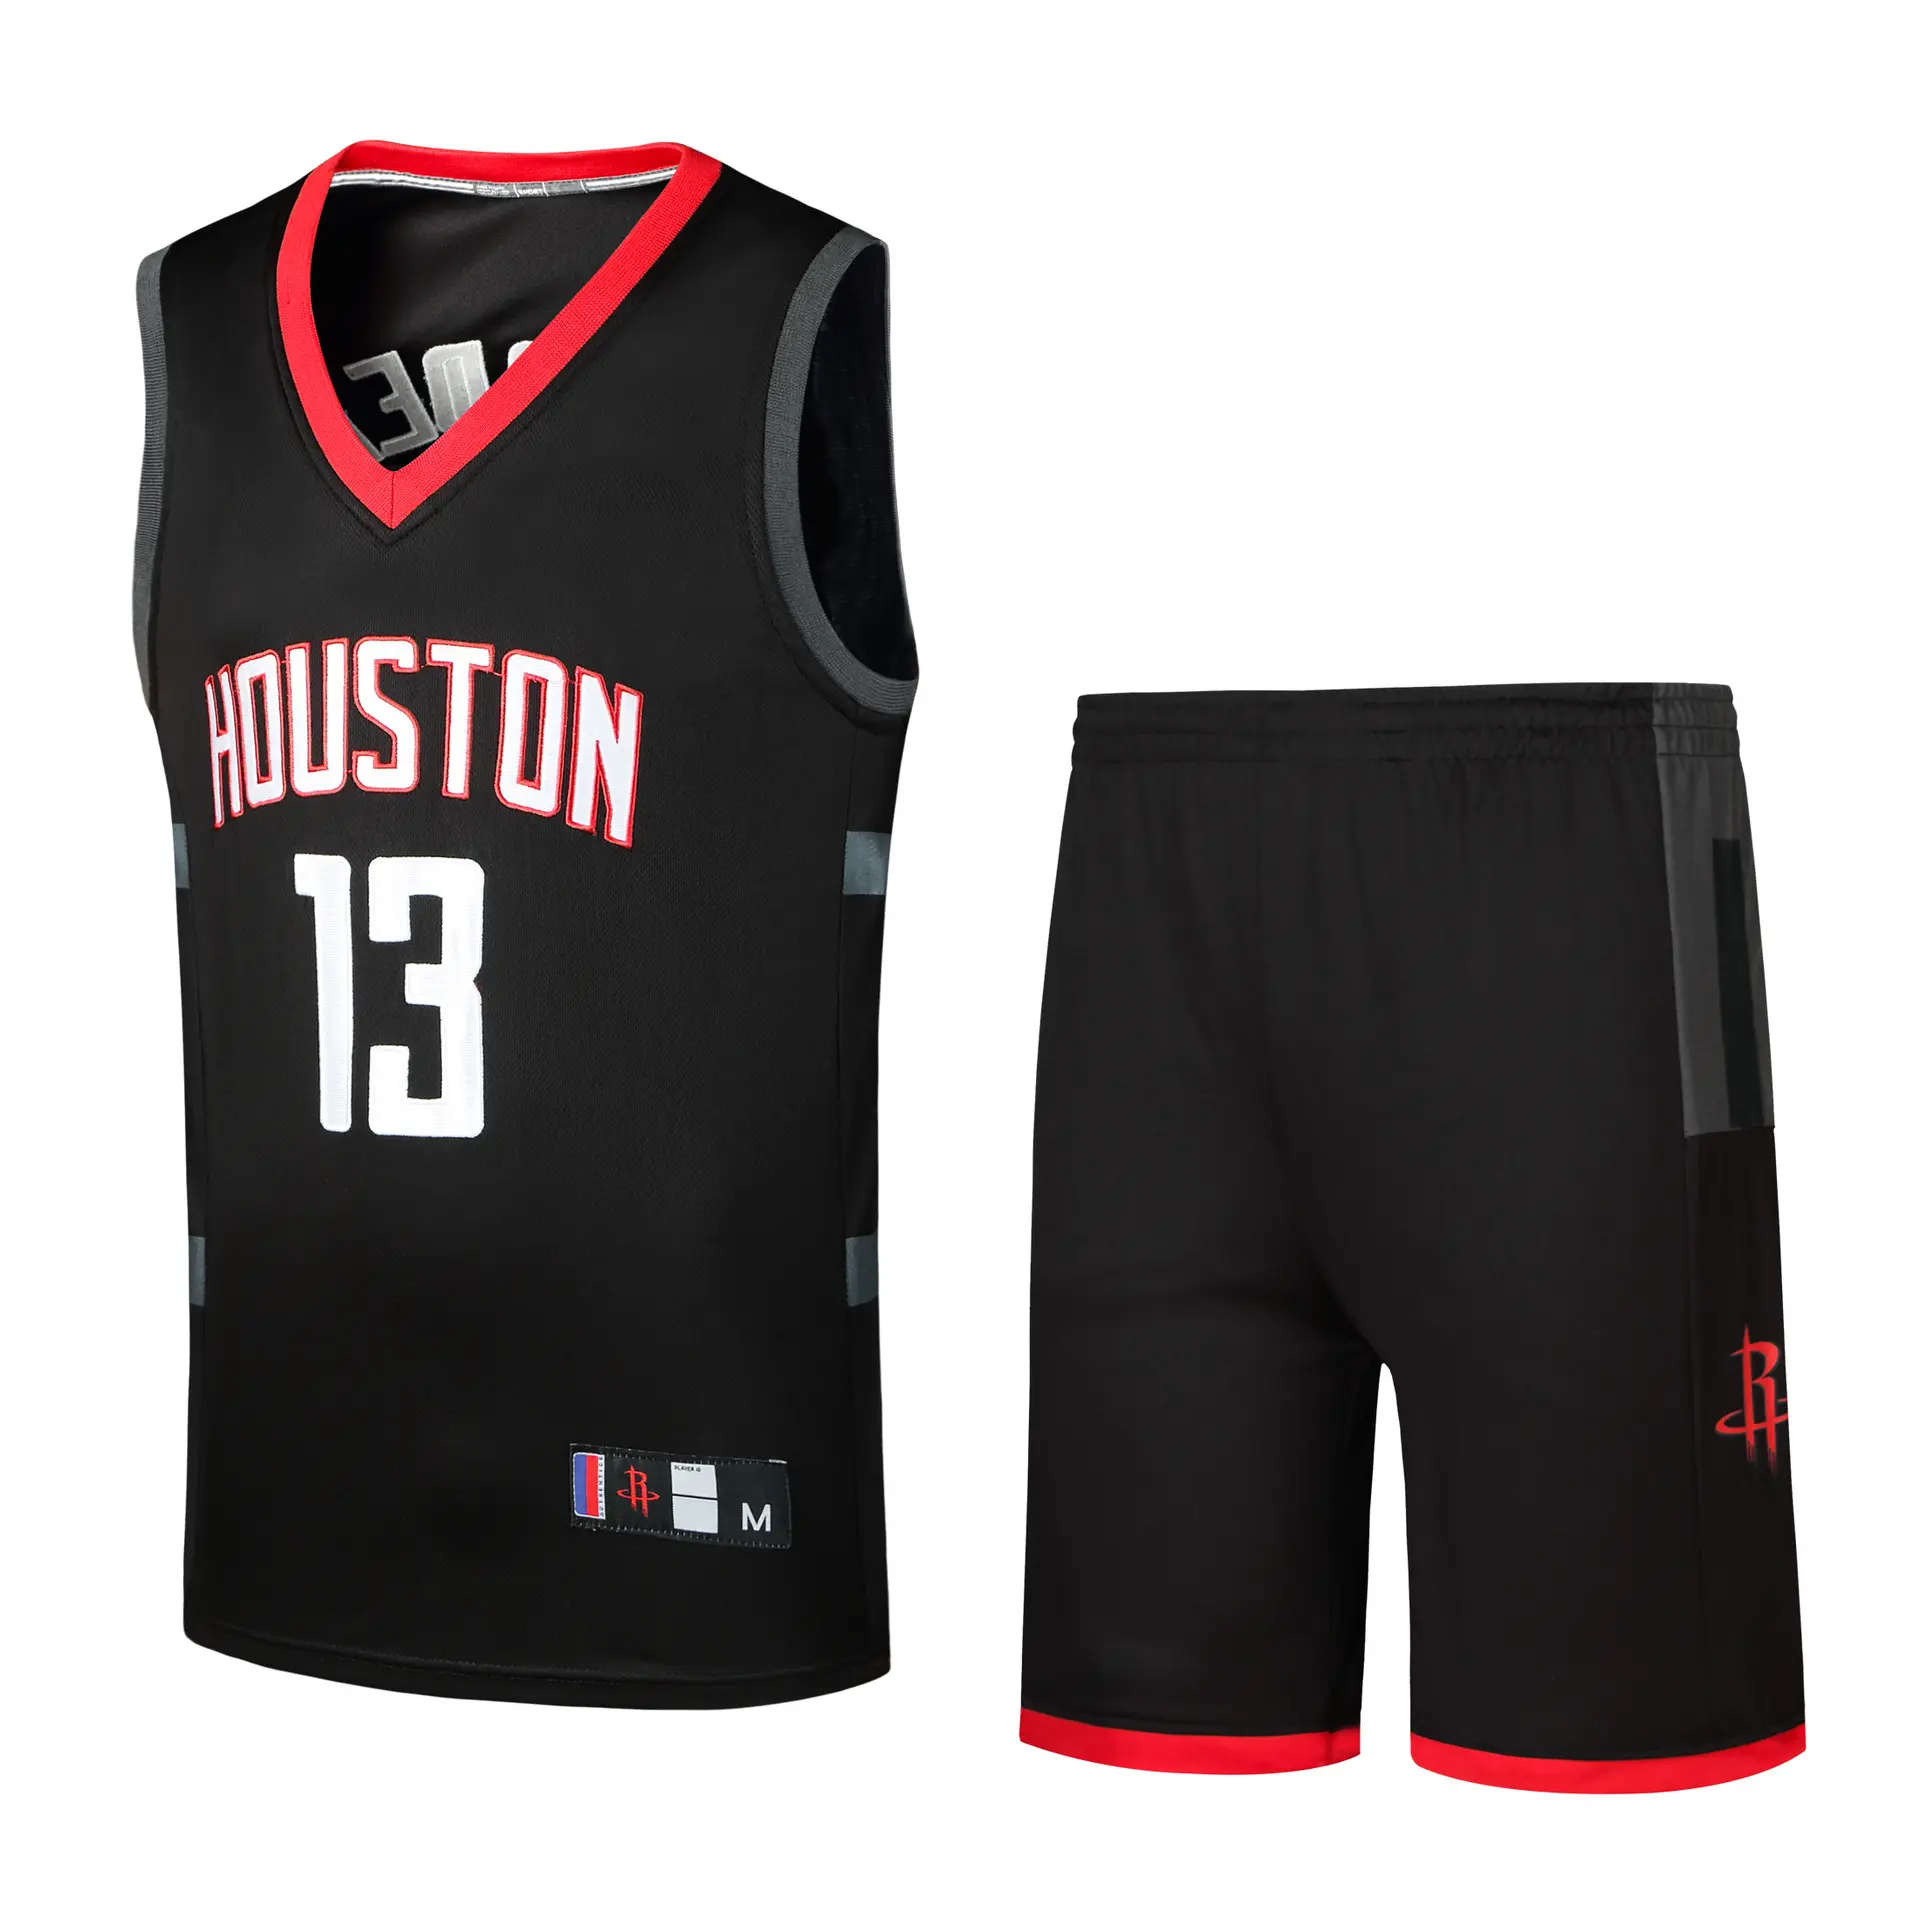 Maglia reversibile di alta qualità uniforme da basket personalizzata ultima maglia da basket Design abbigliamento da basket all'ingrosso economico